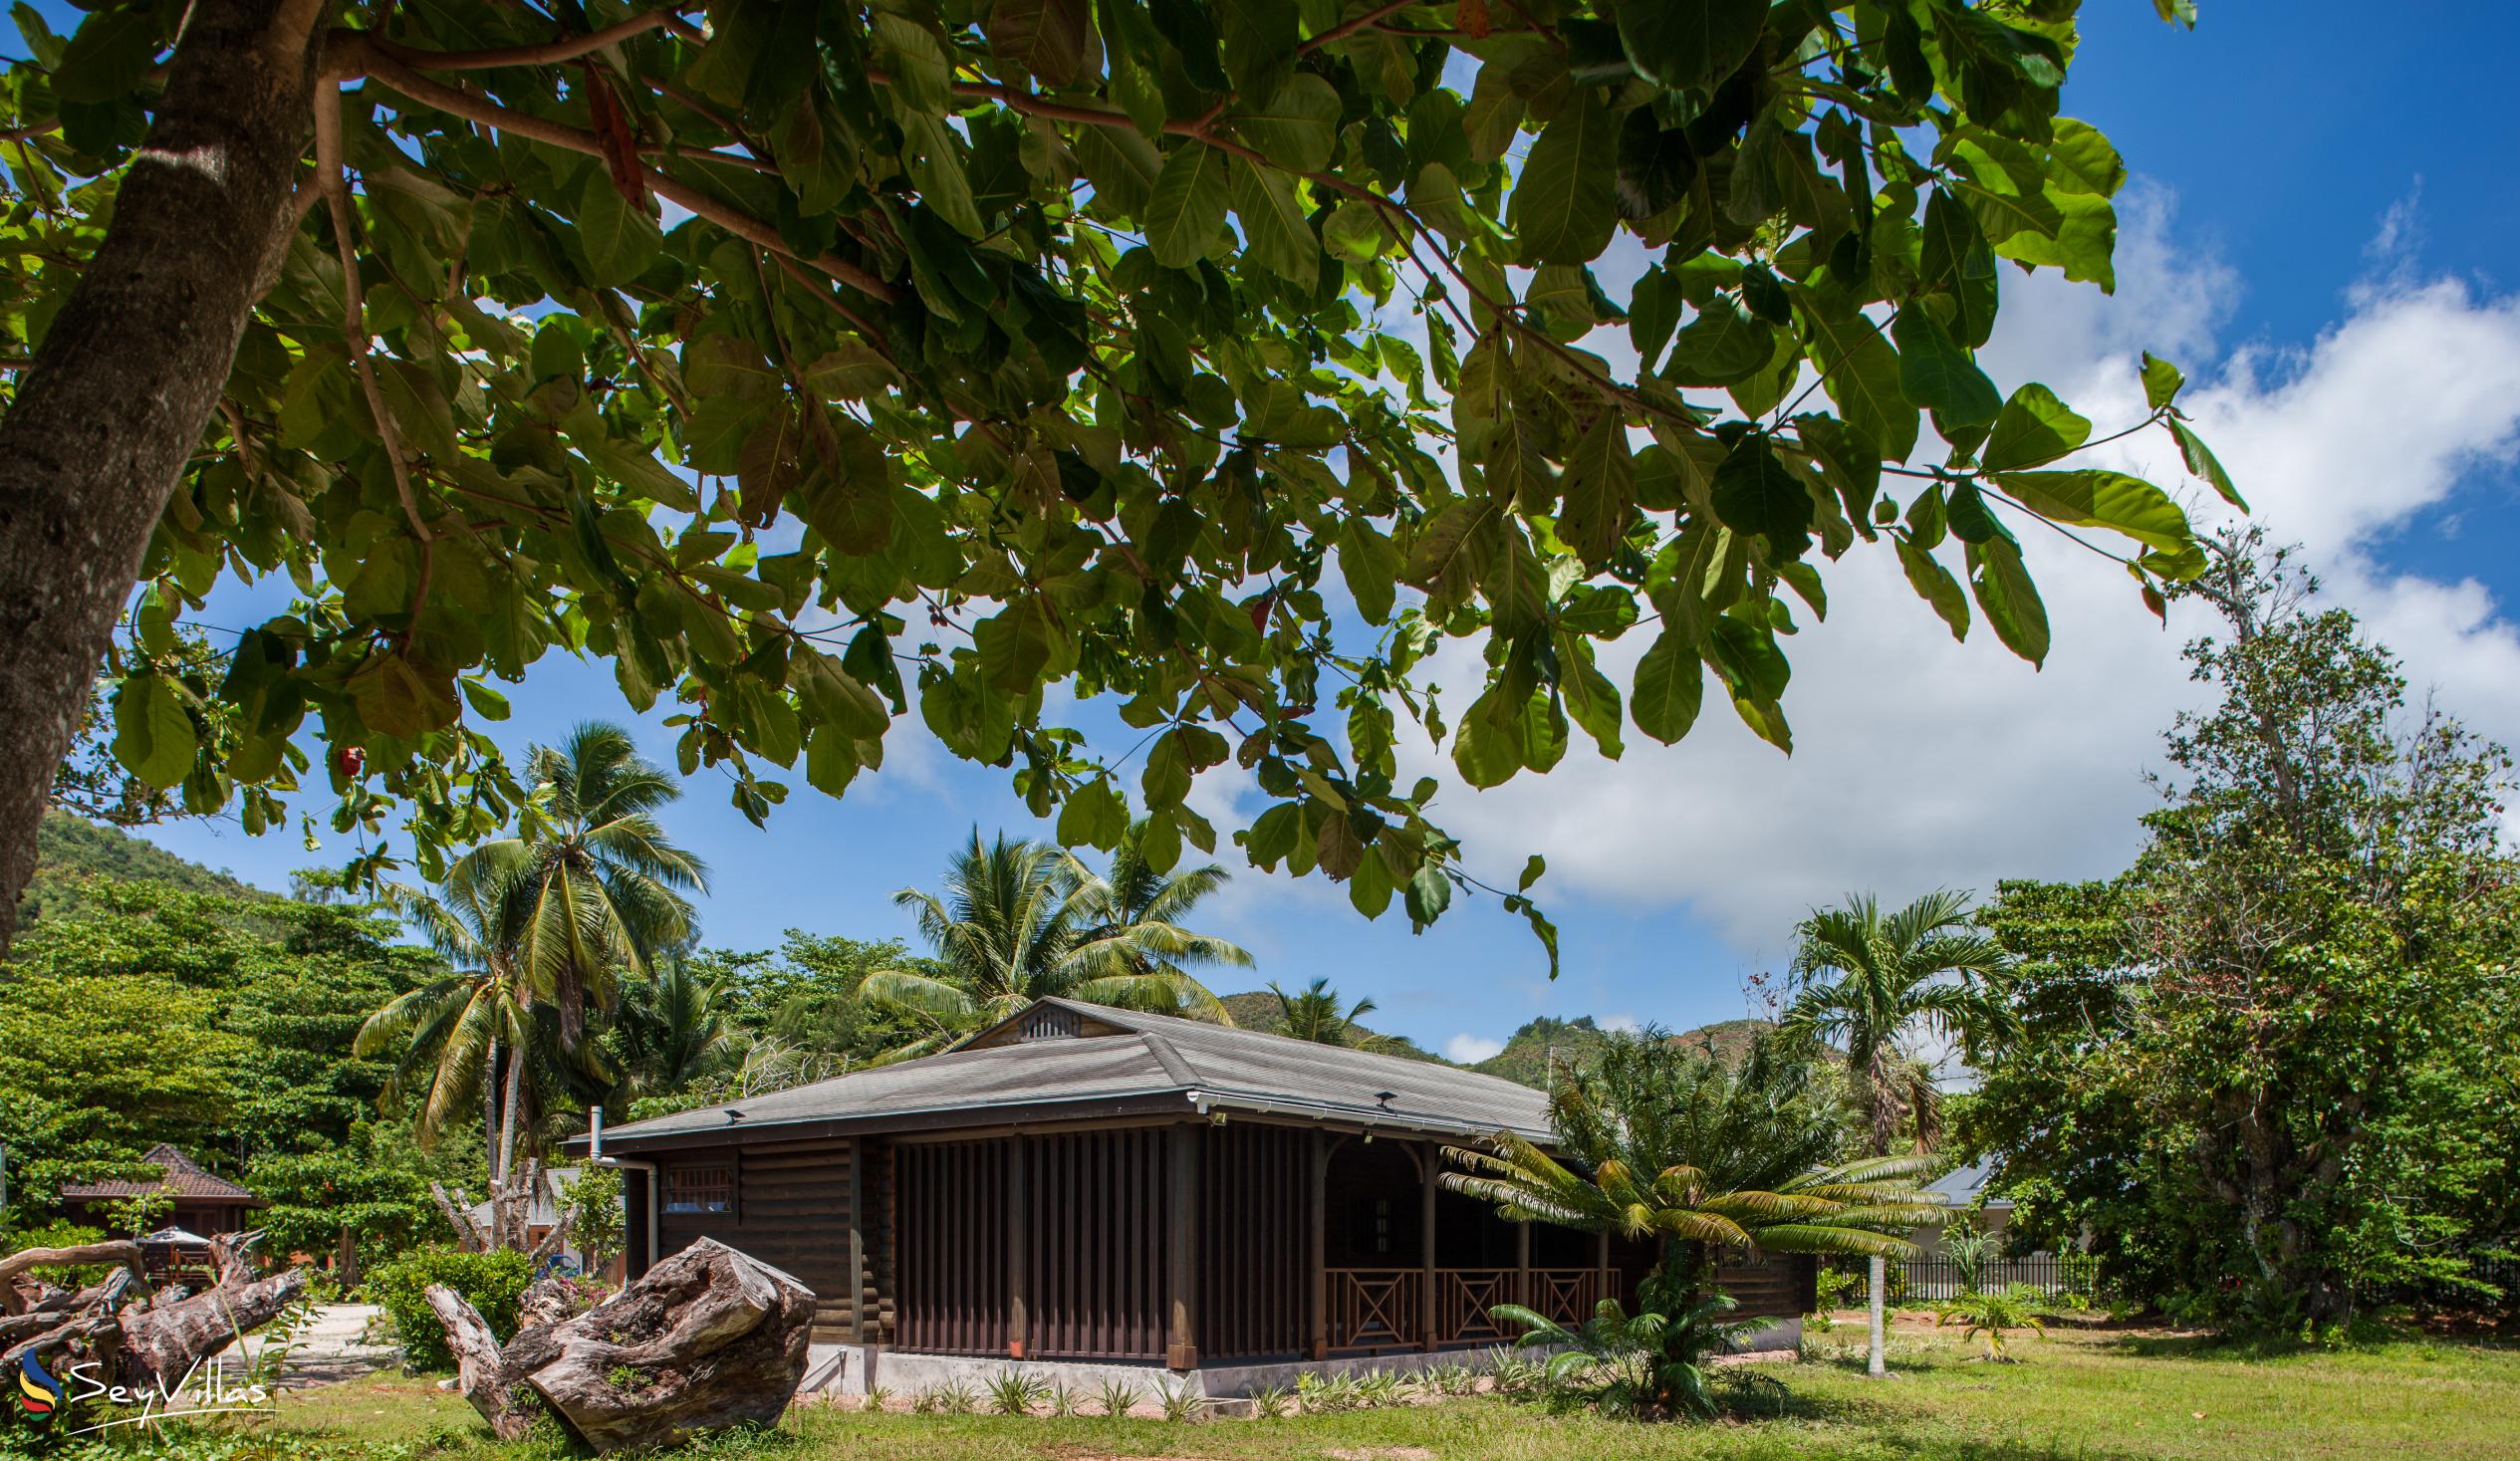 Foto 15: Heliconia Grove - Aussenbereich - Praslin (Seychellen)